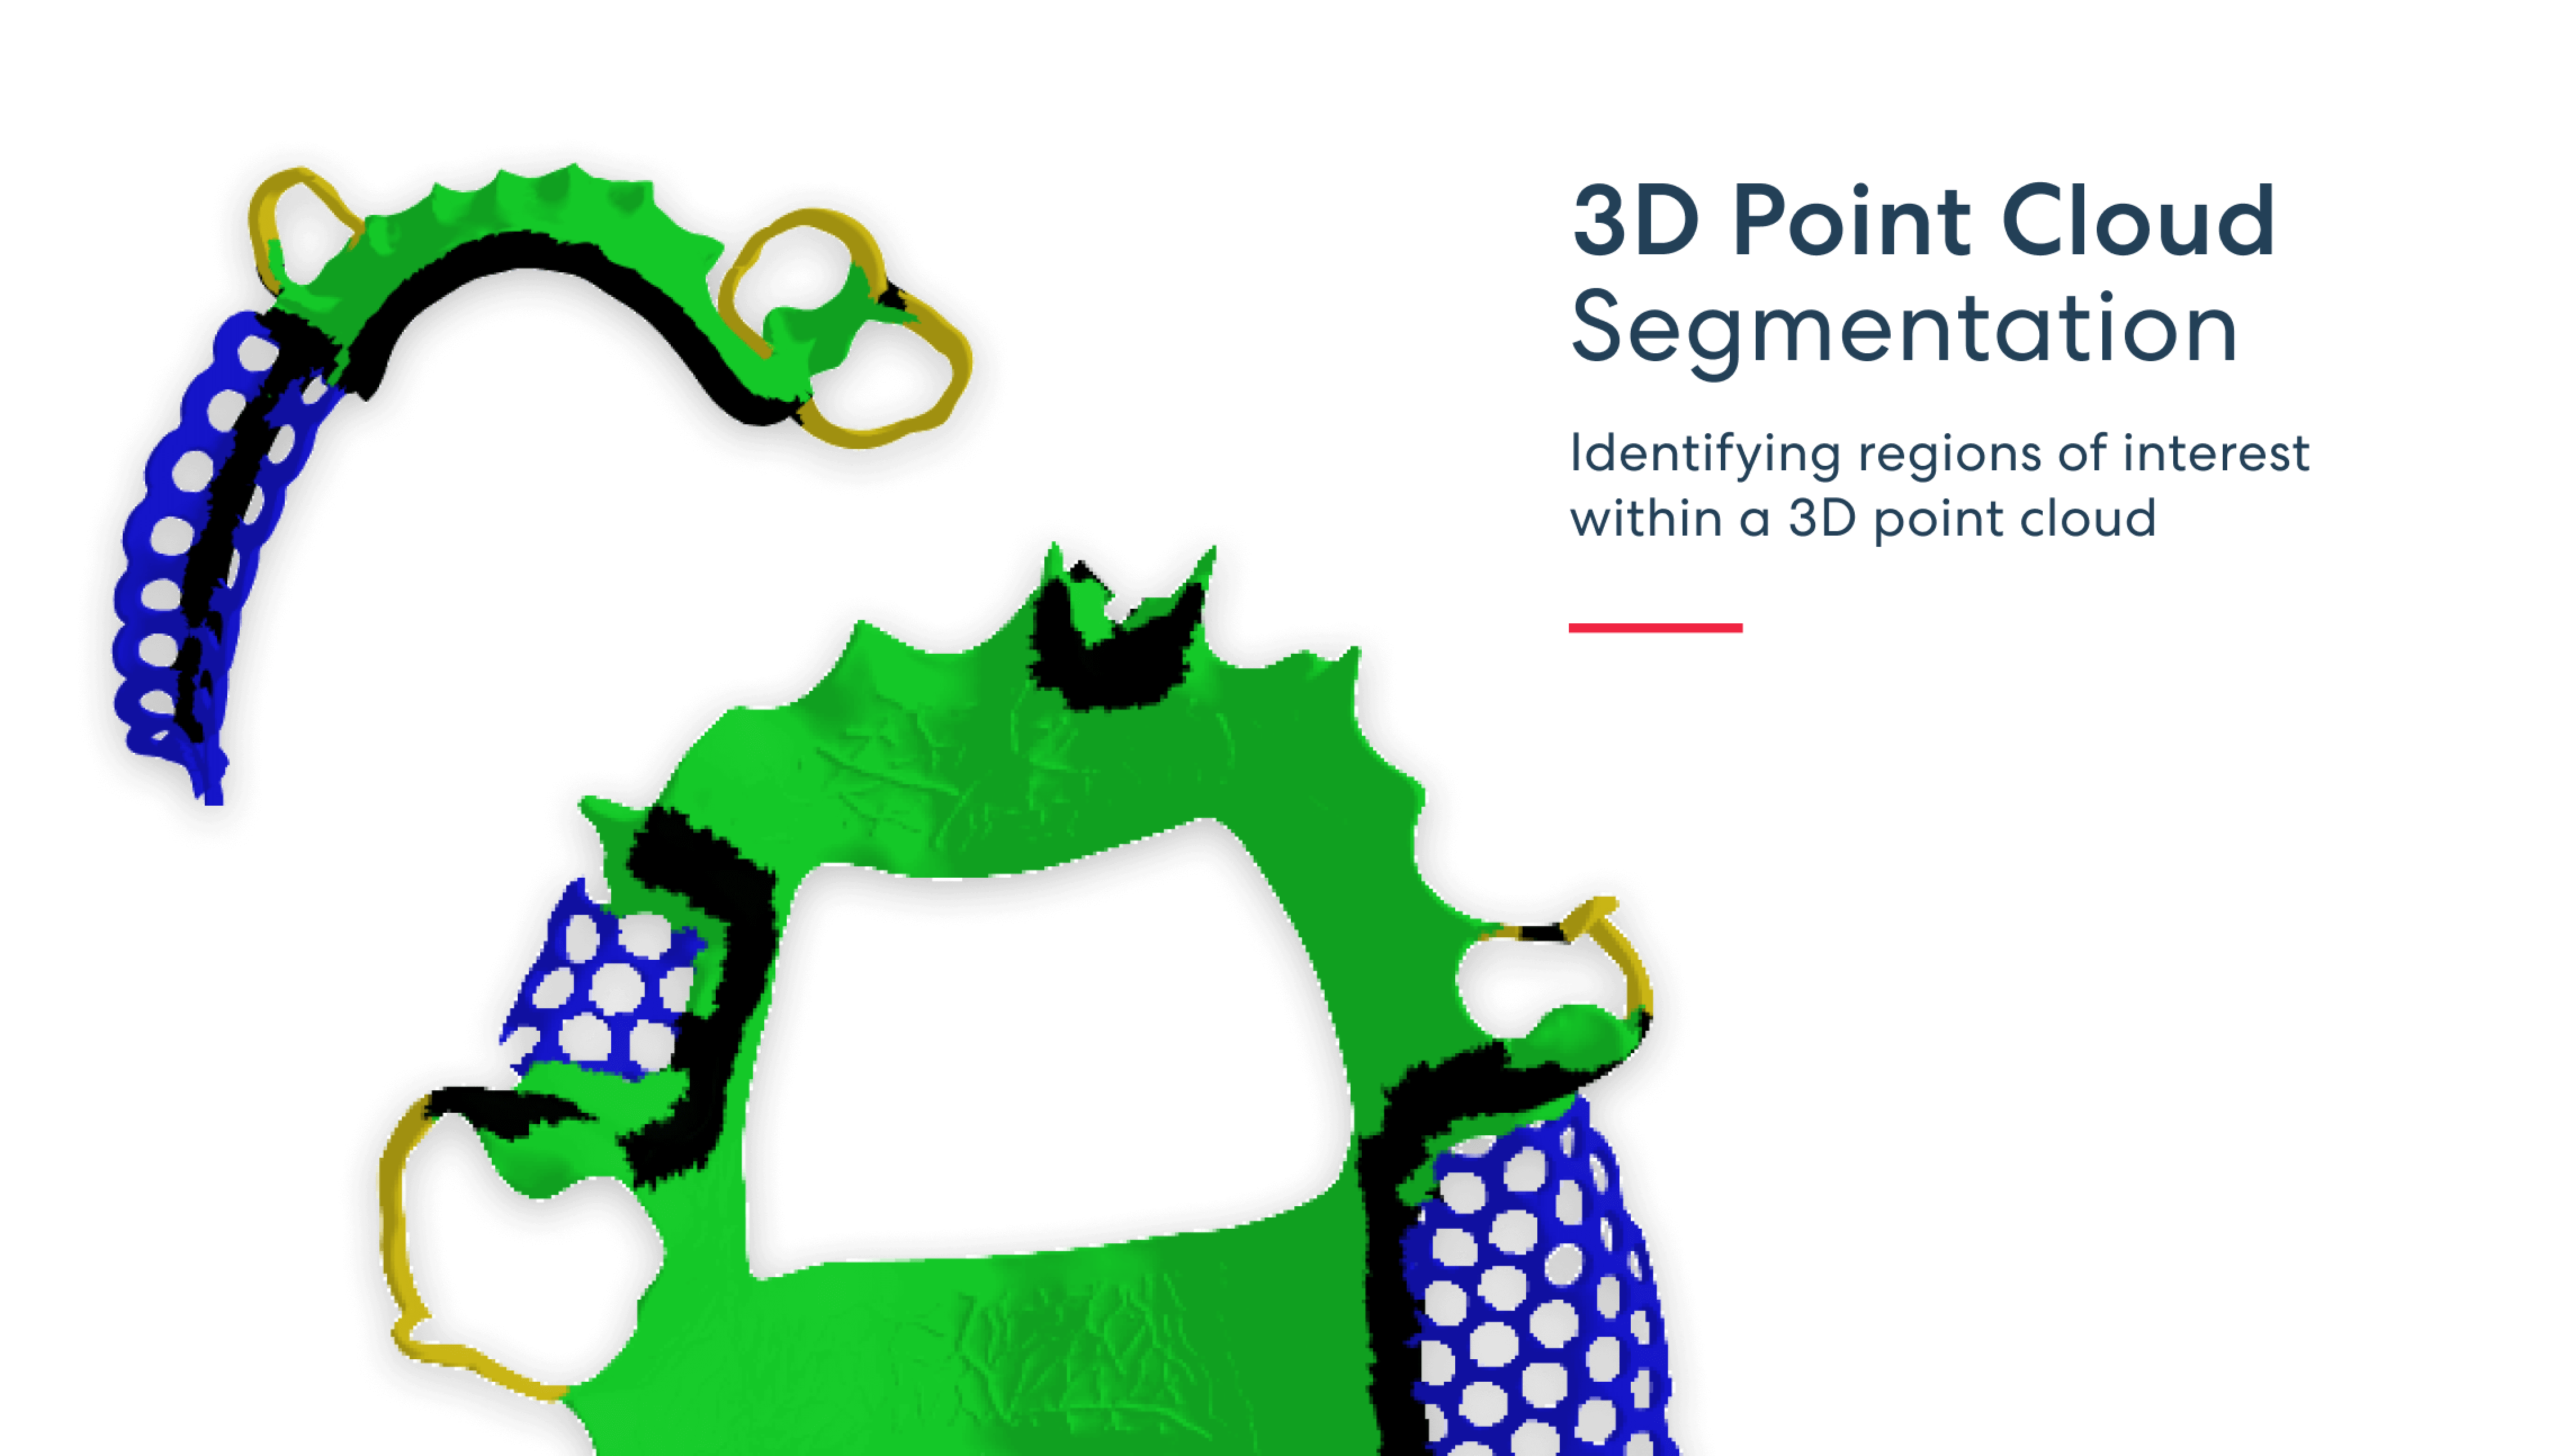 3D 포인트 클라우드 분할 - 3D 포인트 클라우드 내에서 관심 영역 식별